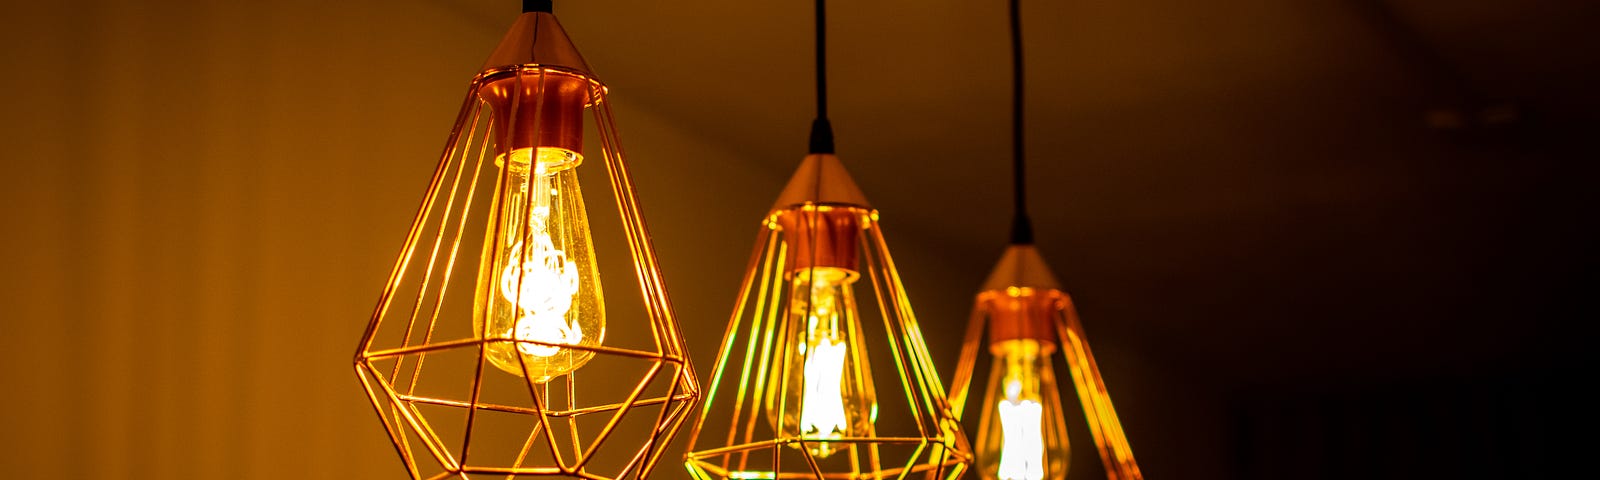 Lit up lamps in a home — Unsplash, Aurélien Lemasson-Théobald